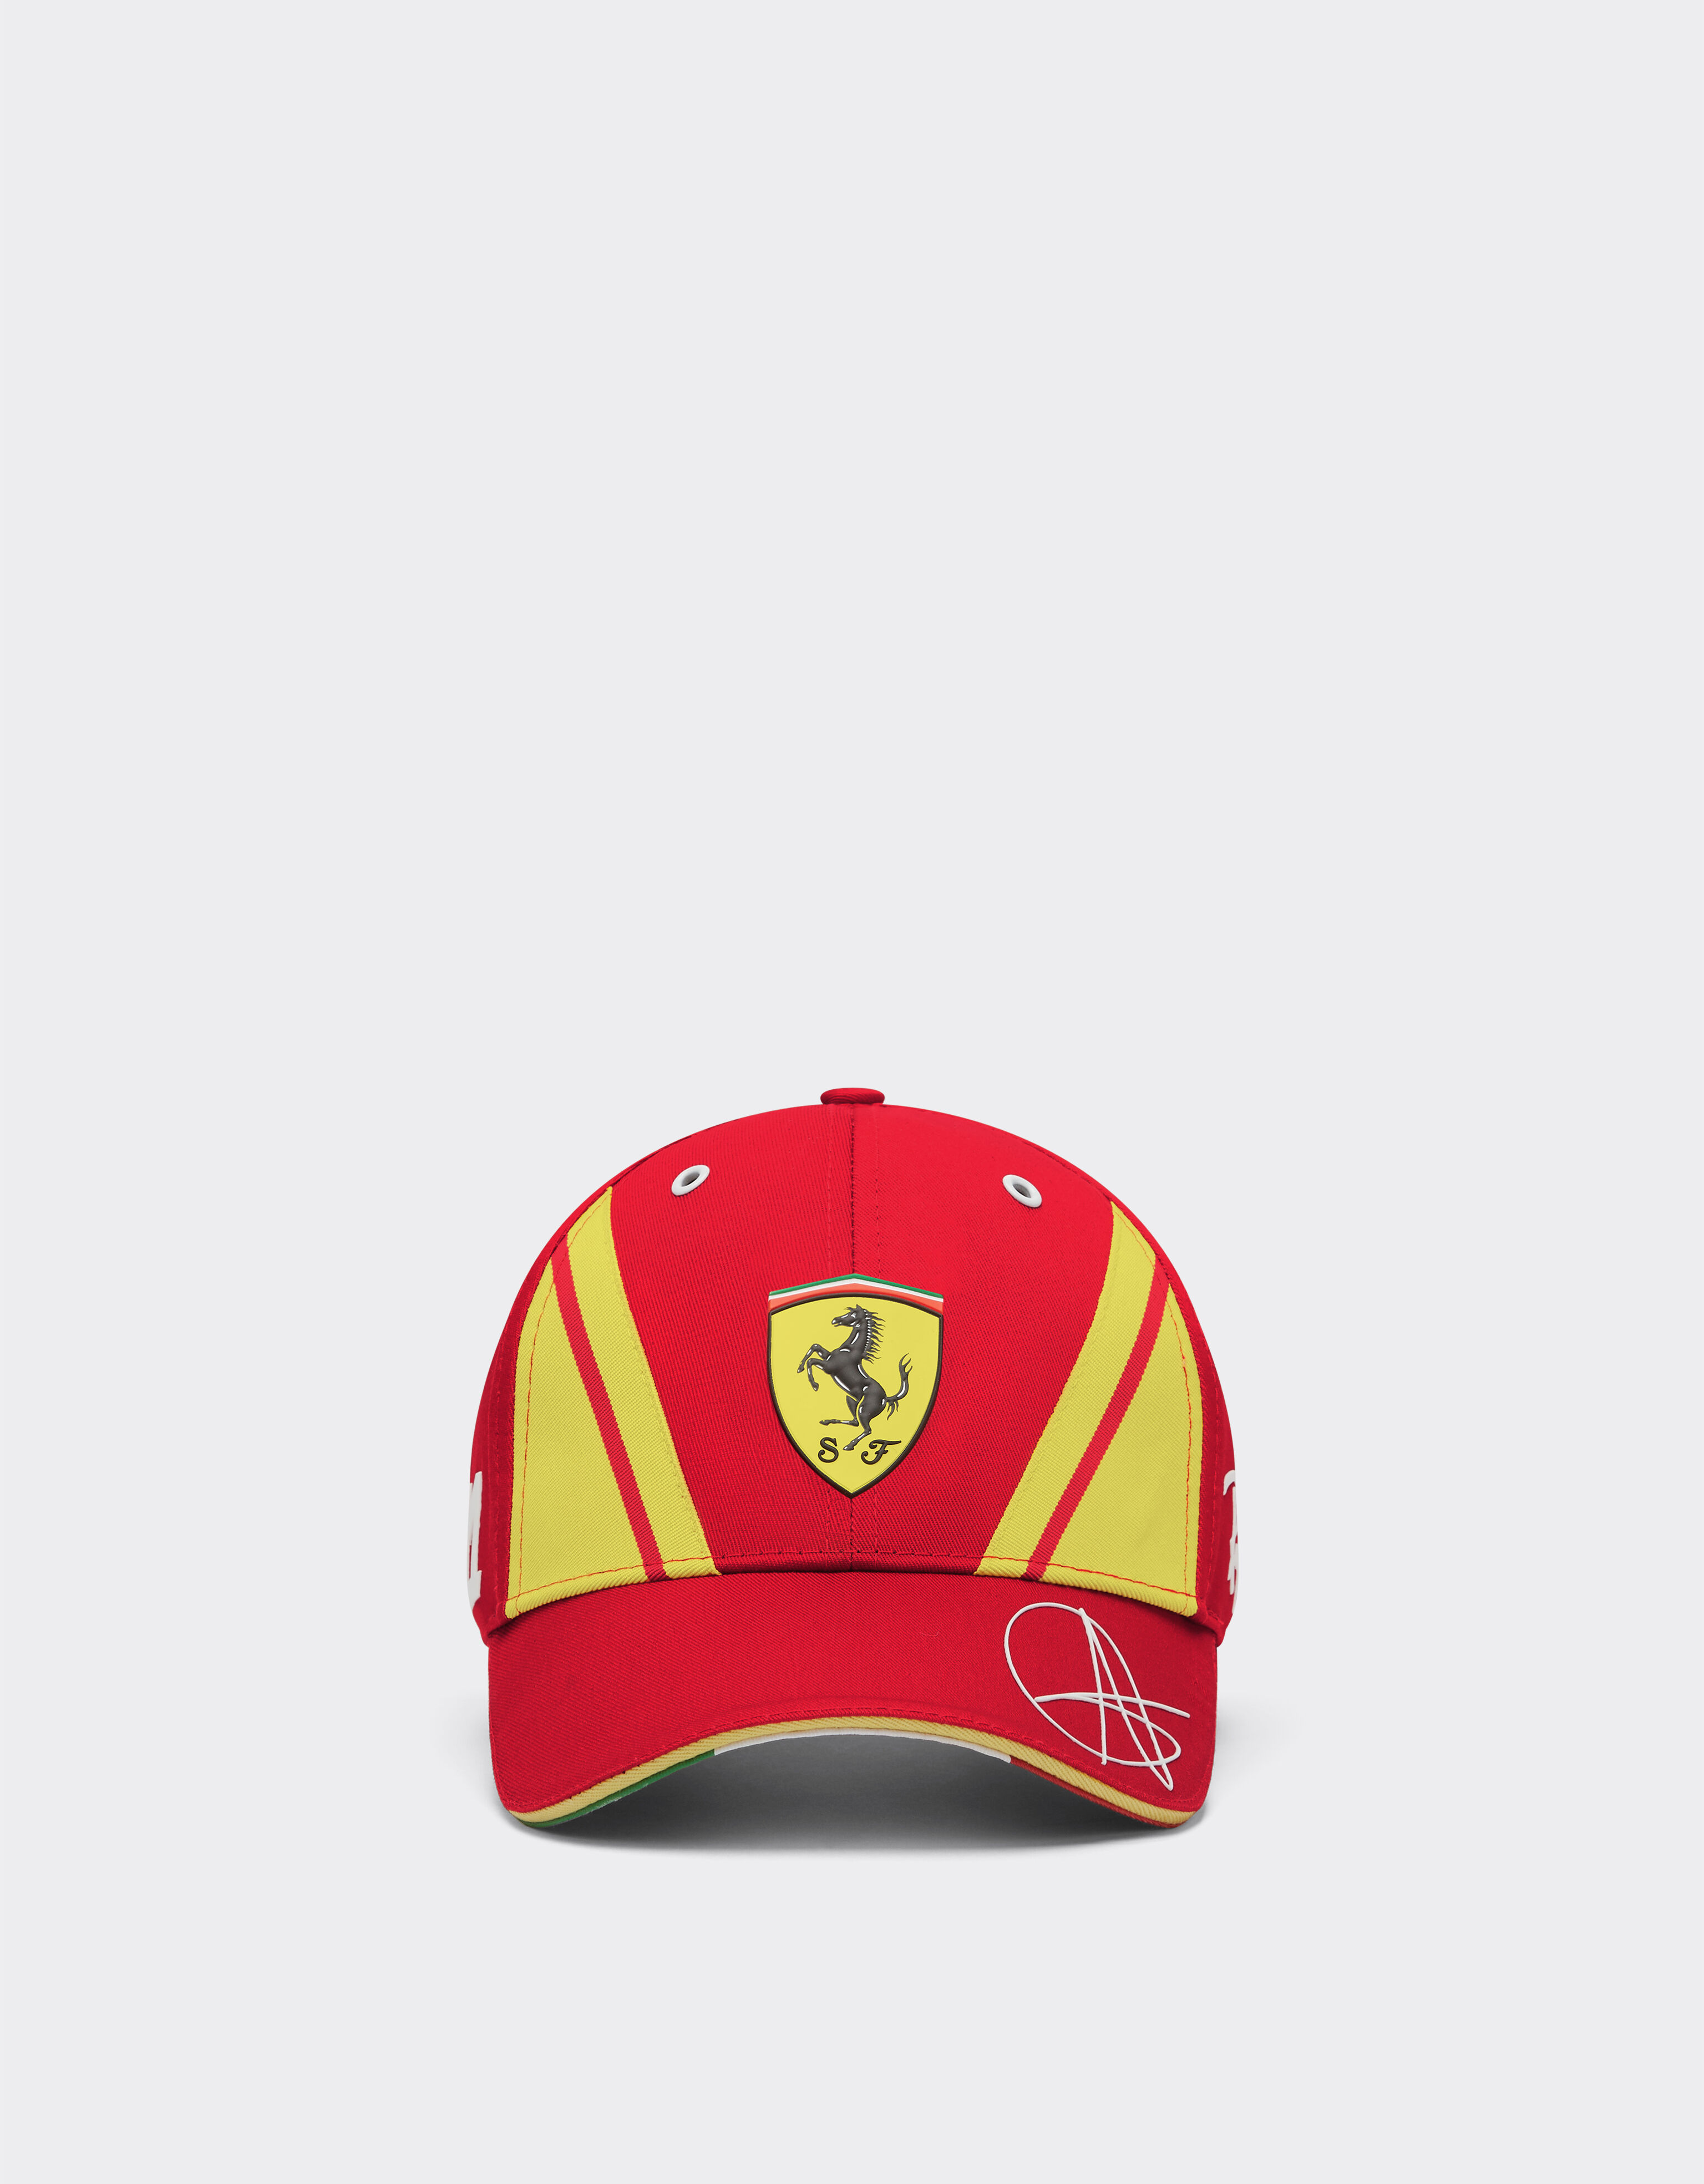 ${brand} Ferrari Giovinazzi Hypercar Hat - Limited Edition ${colorDescription} ${masterID}